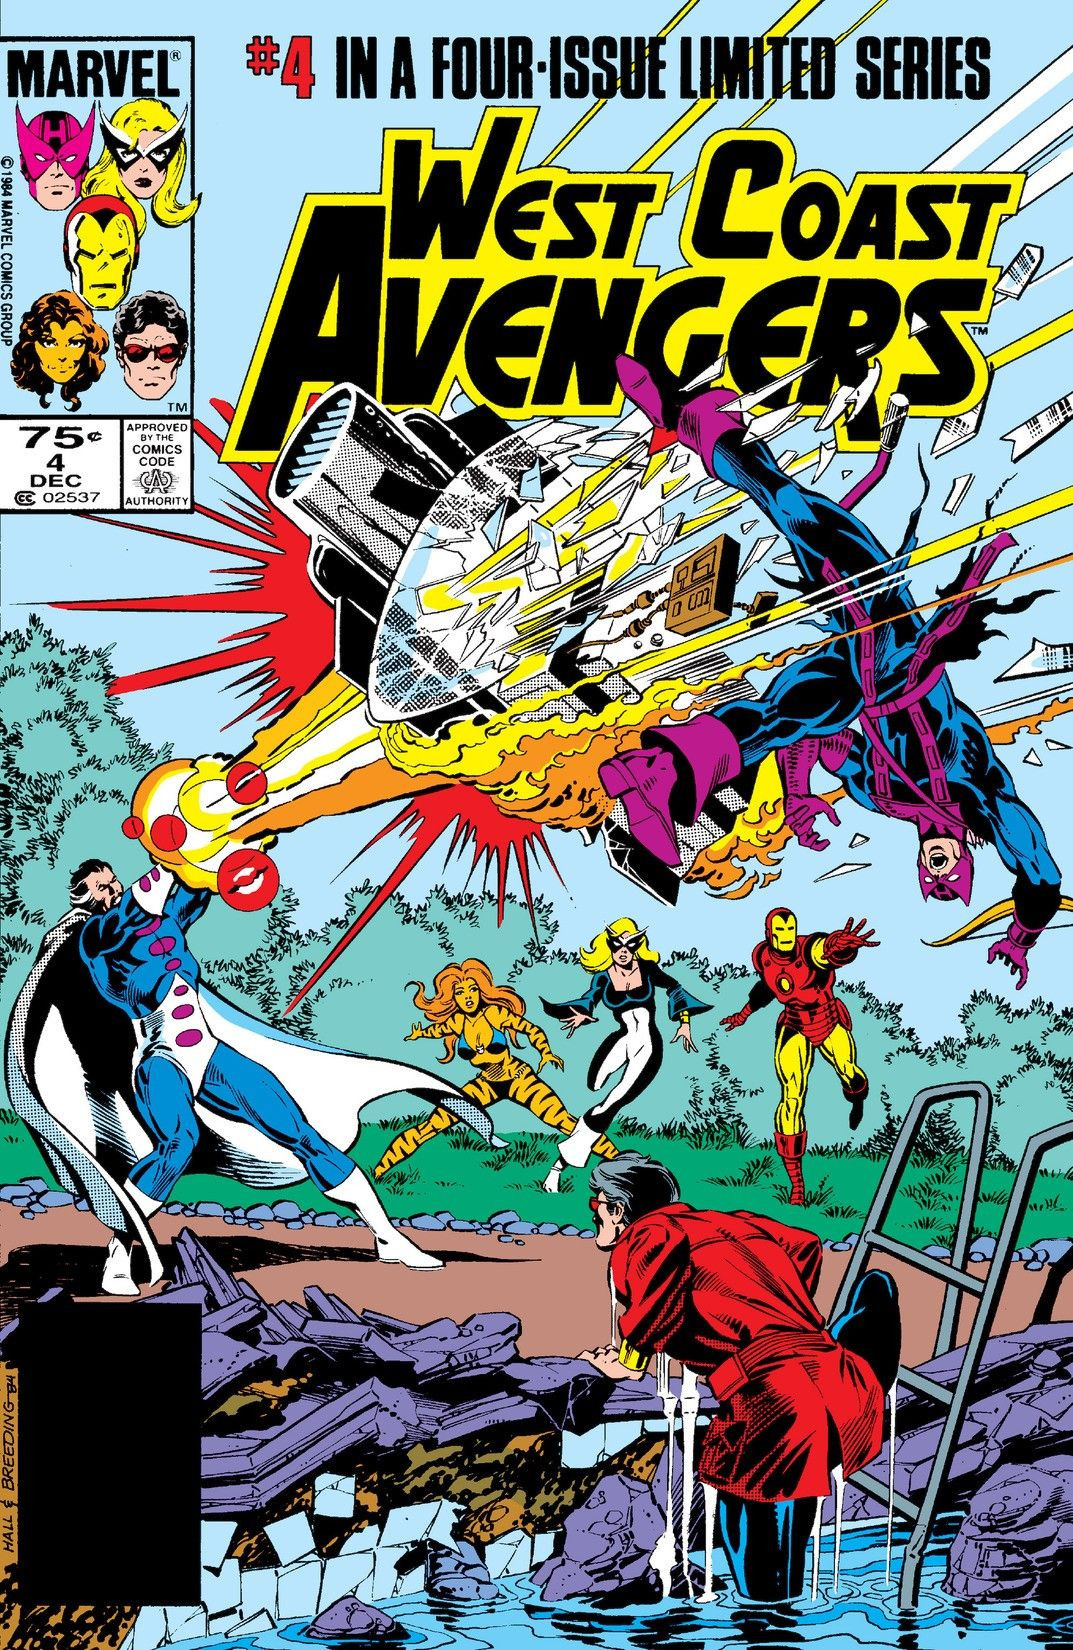 West Coast Avengers Vol 1 4 | Marvel Database | Fandom